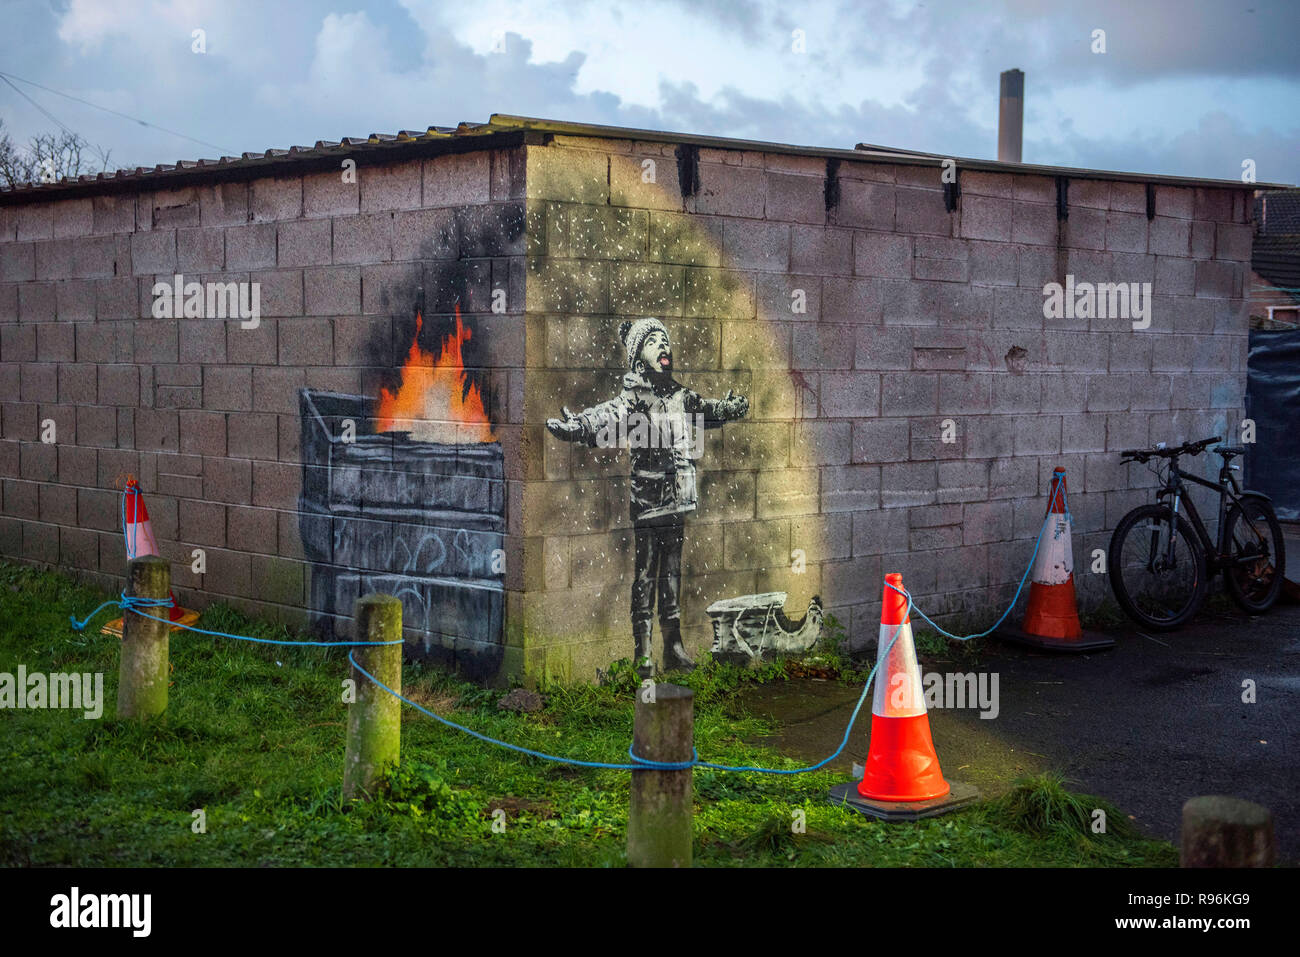 Port Talbot, Gales, Reino Unido. 19 de diciembre de 2018. Graffiti que ha  aparecido en un garaje que está por el anónimo artista callejero Banksy en  Port Talbot. La ilustración muestra a